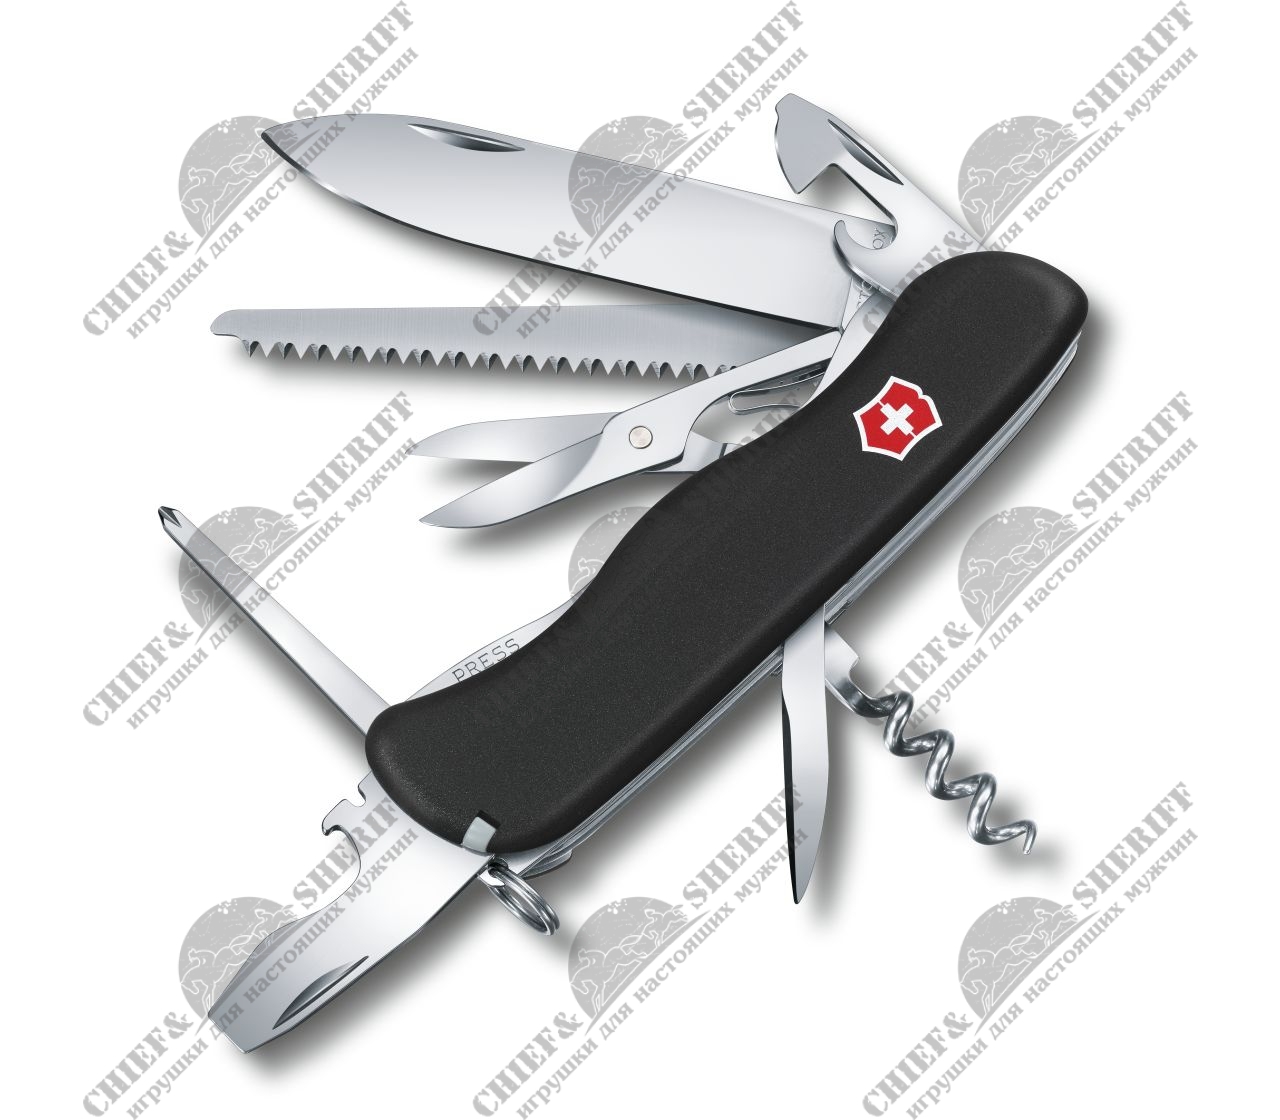 Нож перочинный Victorinox Outrider (черный) 111 мм, 14 функций, 0.8513.3